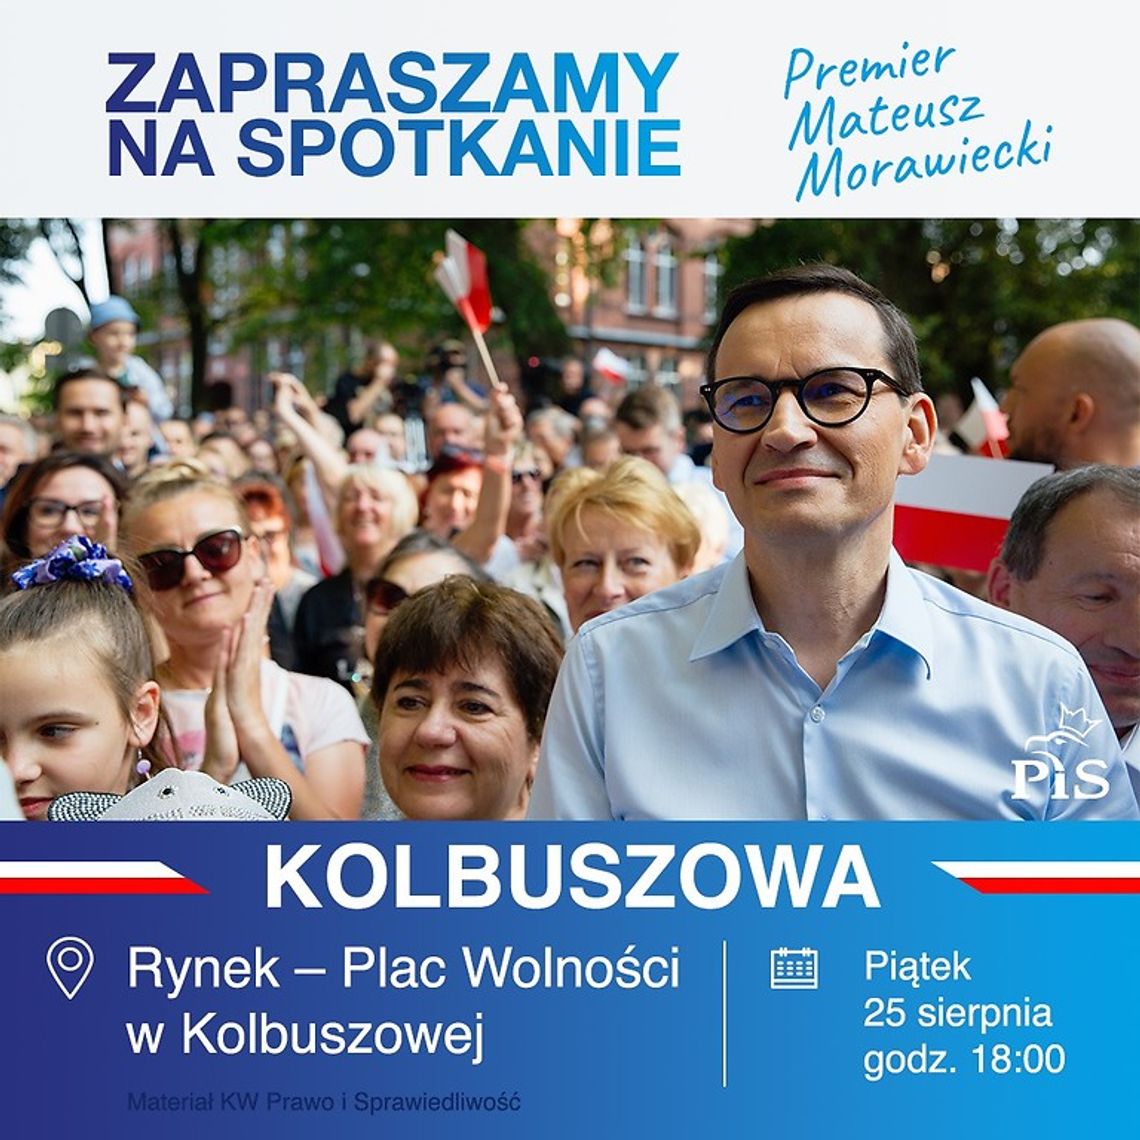 Premier RP Mateusz Morawiecki z wizytą w Kolbuszowej!